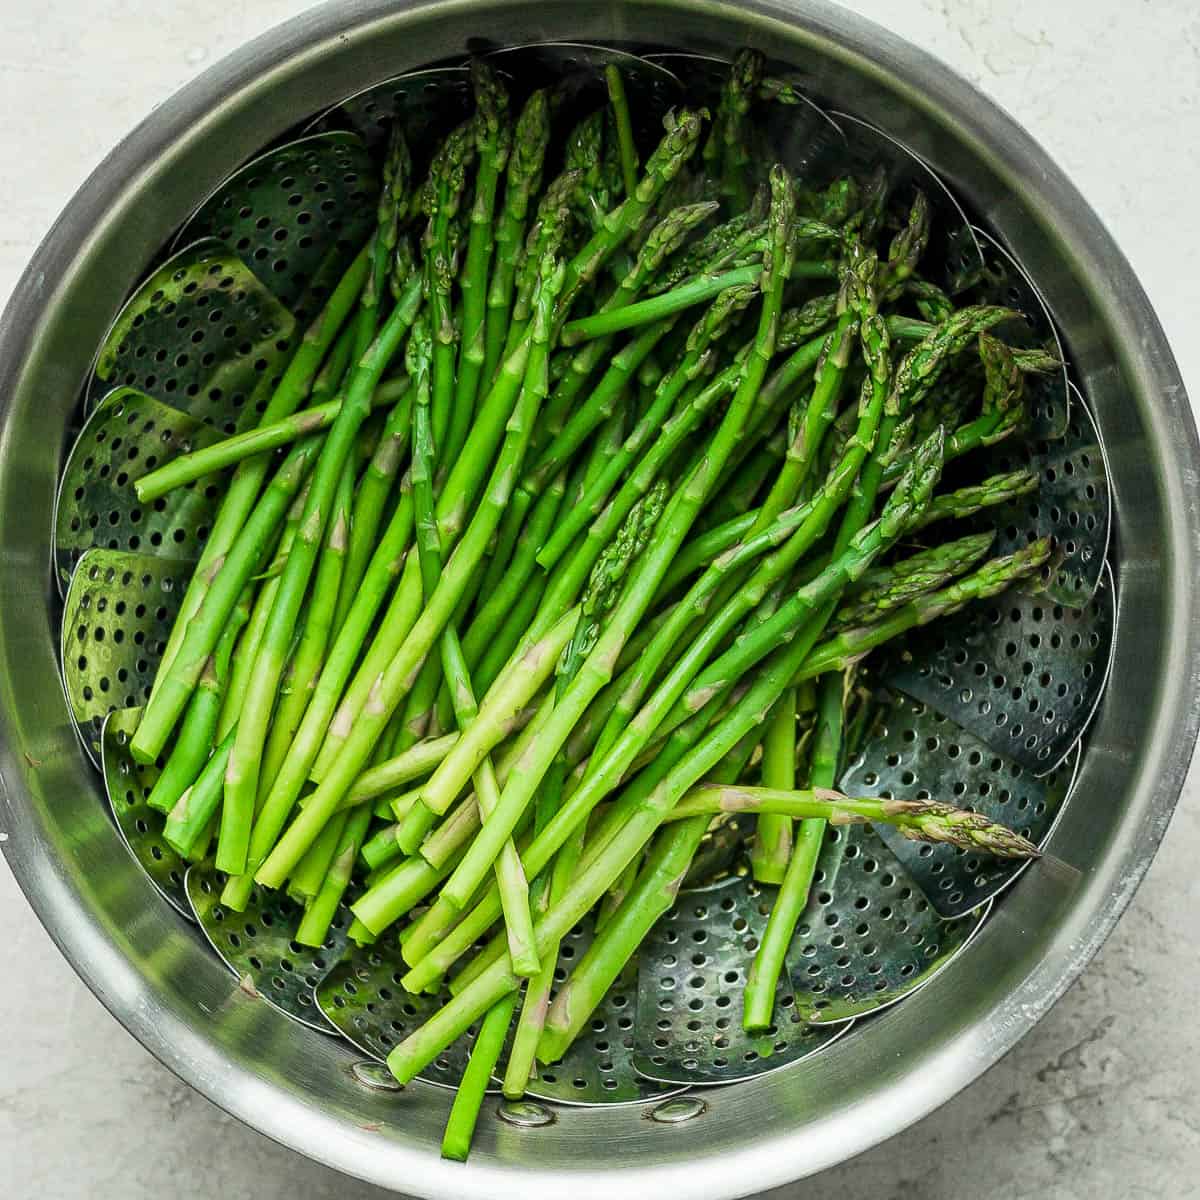 A steamed asparagus recipe.